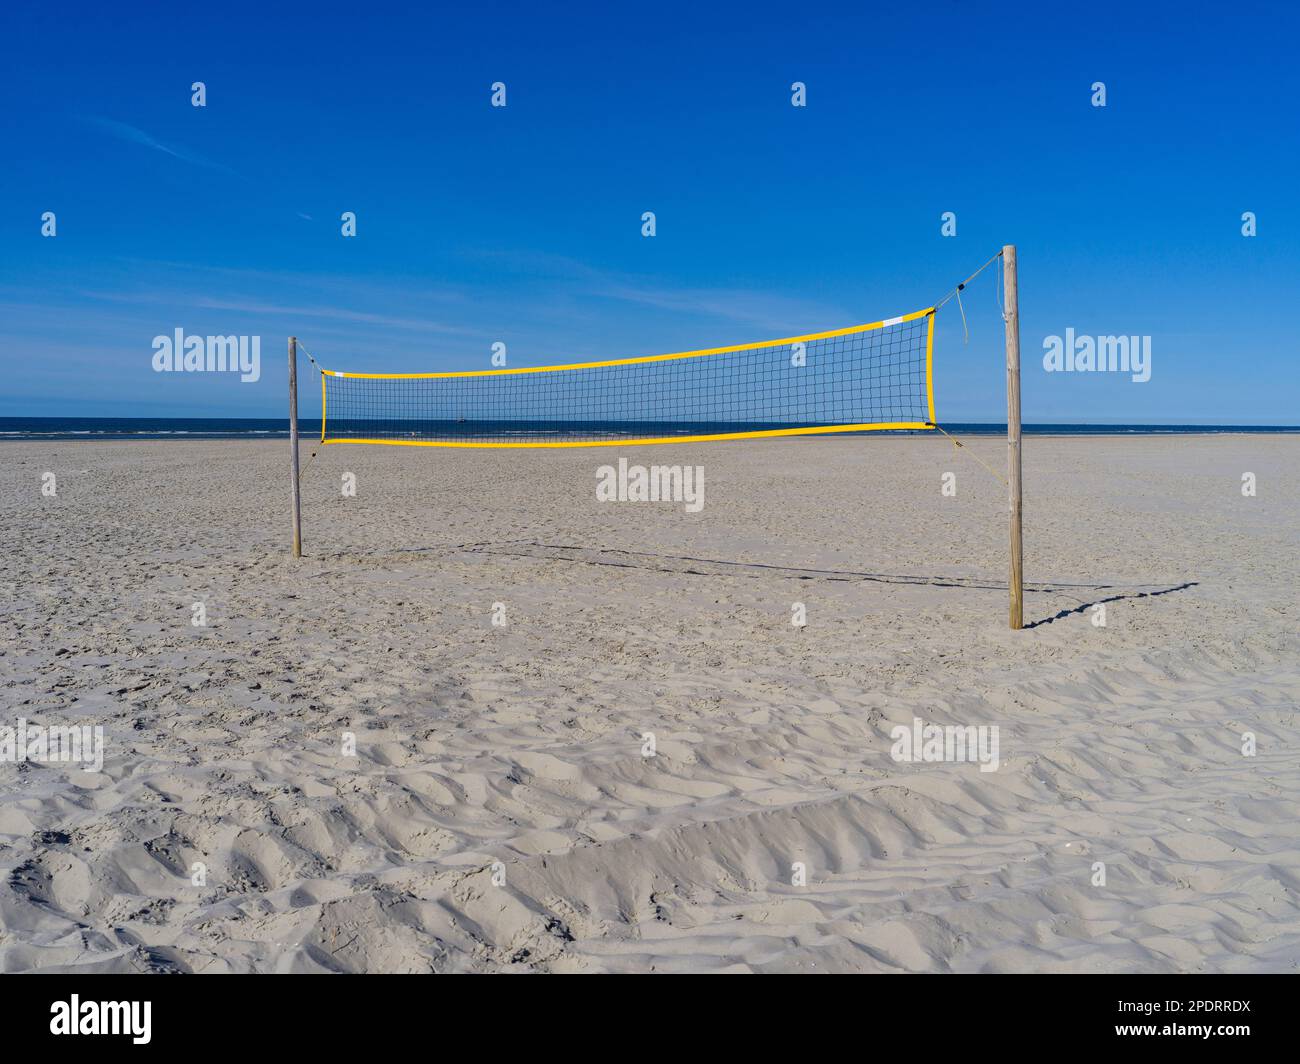 Volleyballnetz an einem menschenleeren Strand auf der Insel Juist, Deutschland Foto Stock